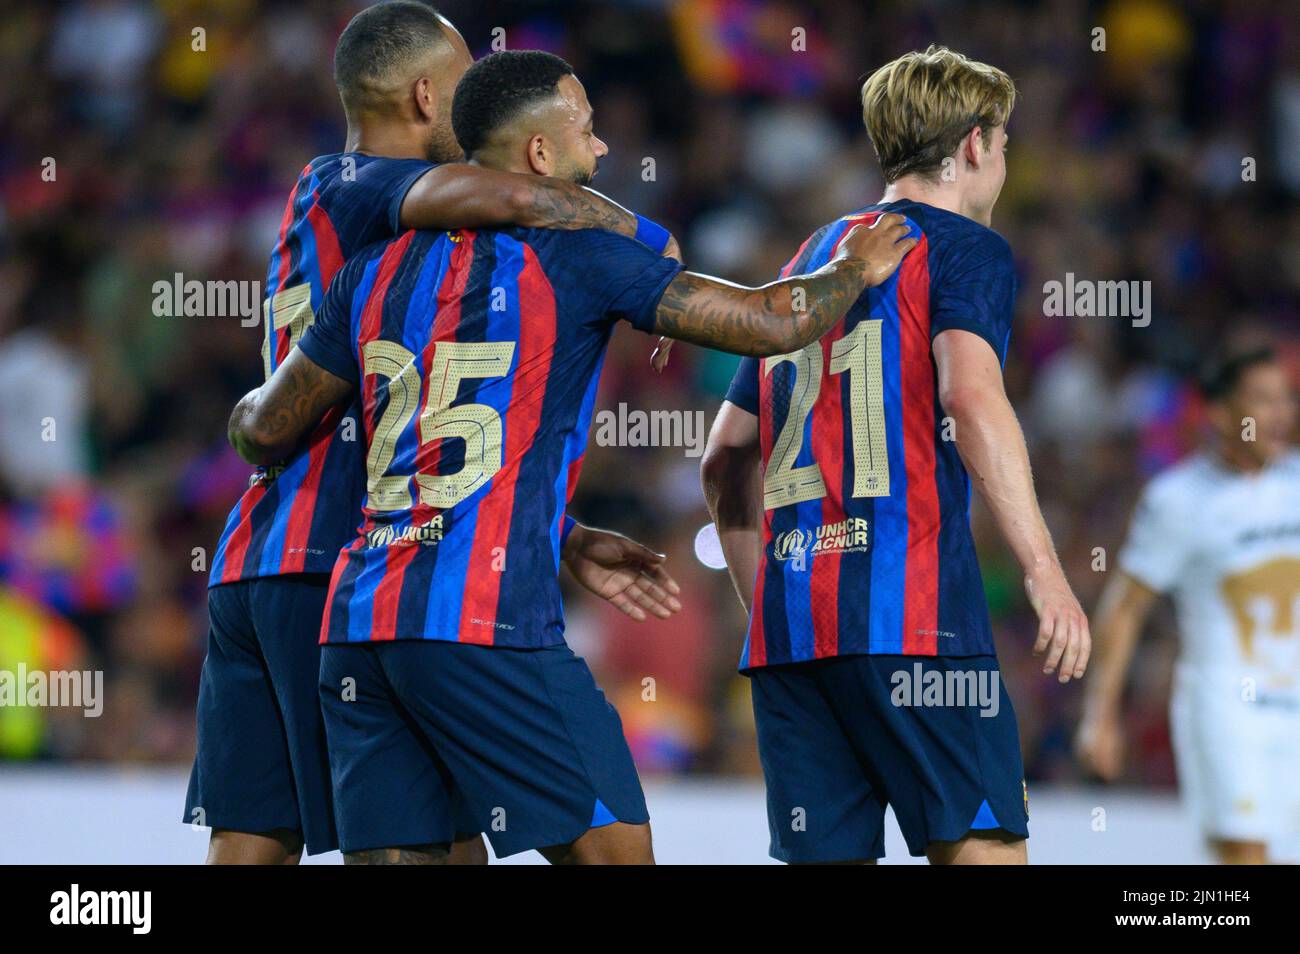 Frankie De Jong del FC Barcelona celebra un gol durante el Torfeo Joan Gamper entre el FC Barcelona y el Pumas UNAM en el Camp Nou de Barcelona, España. Foto de stock